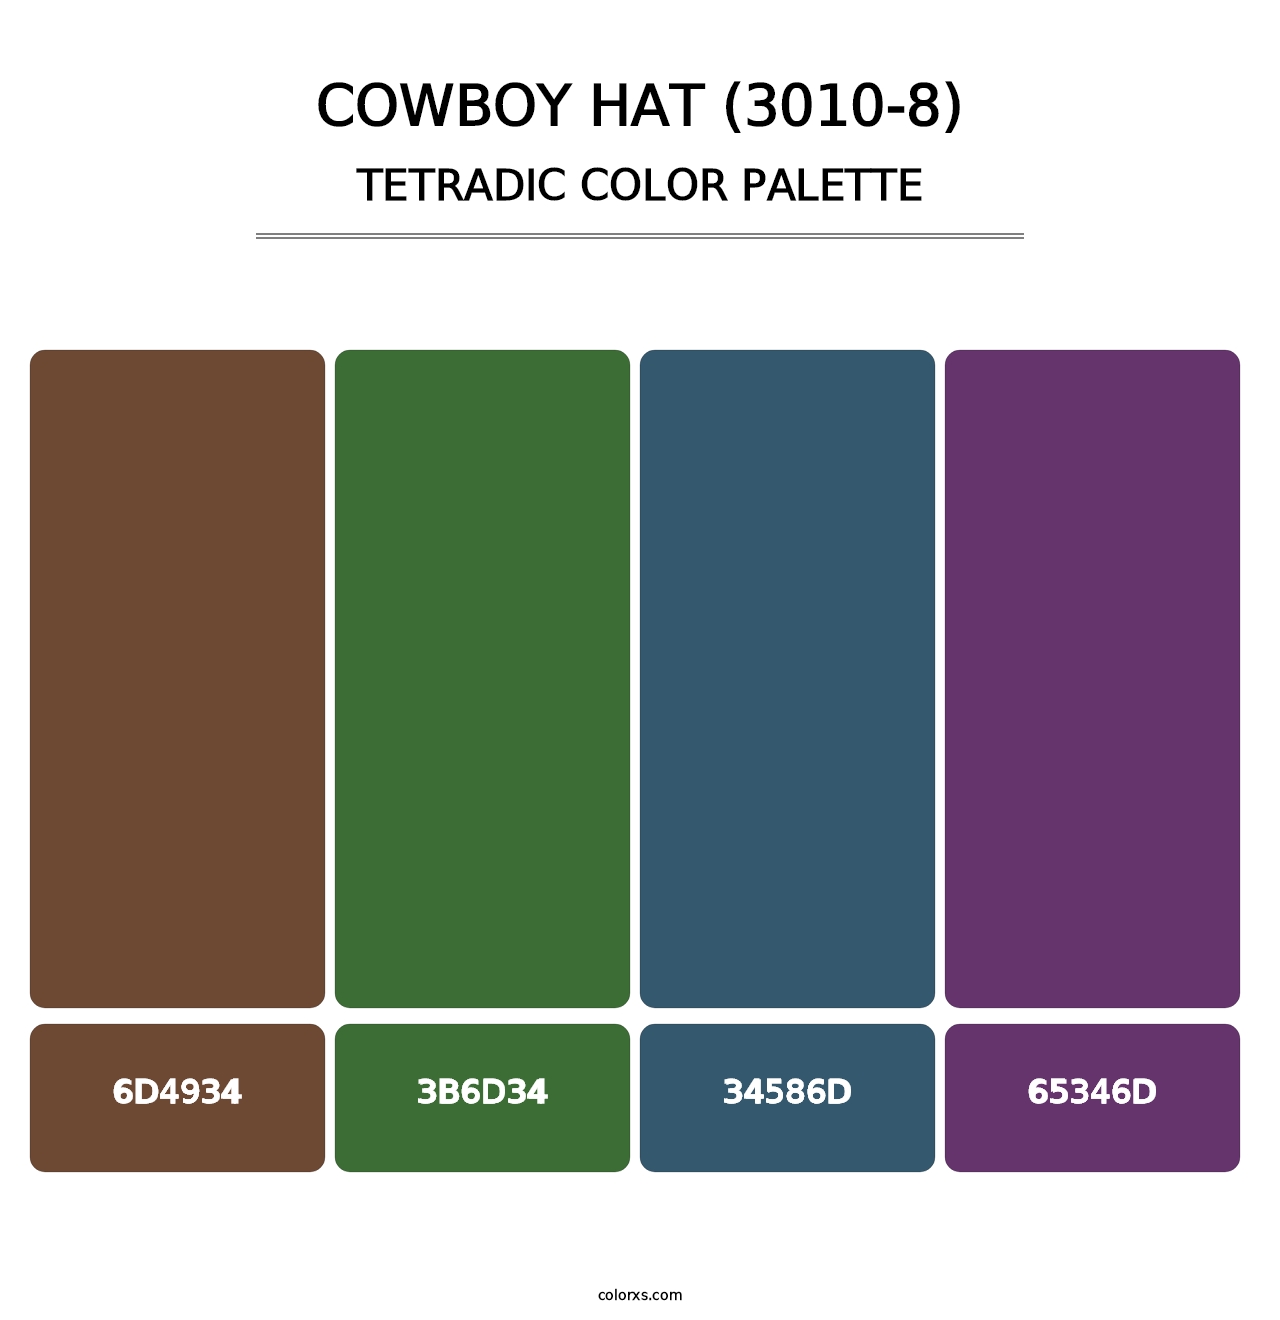 Cowboy Hat (3010-8) - Tetradic Color Palette